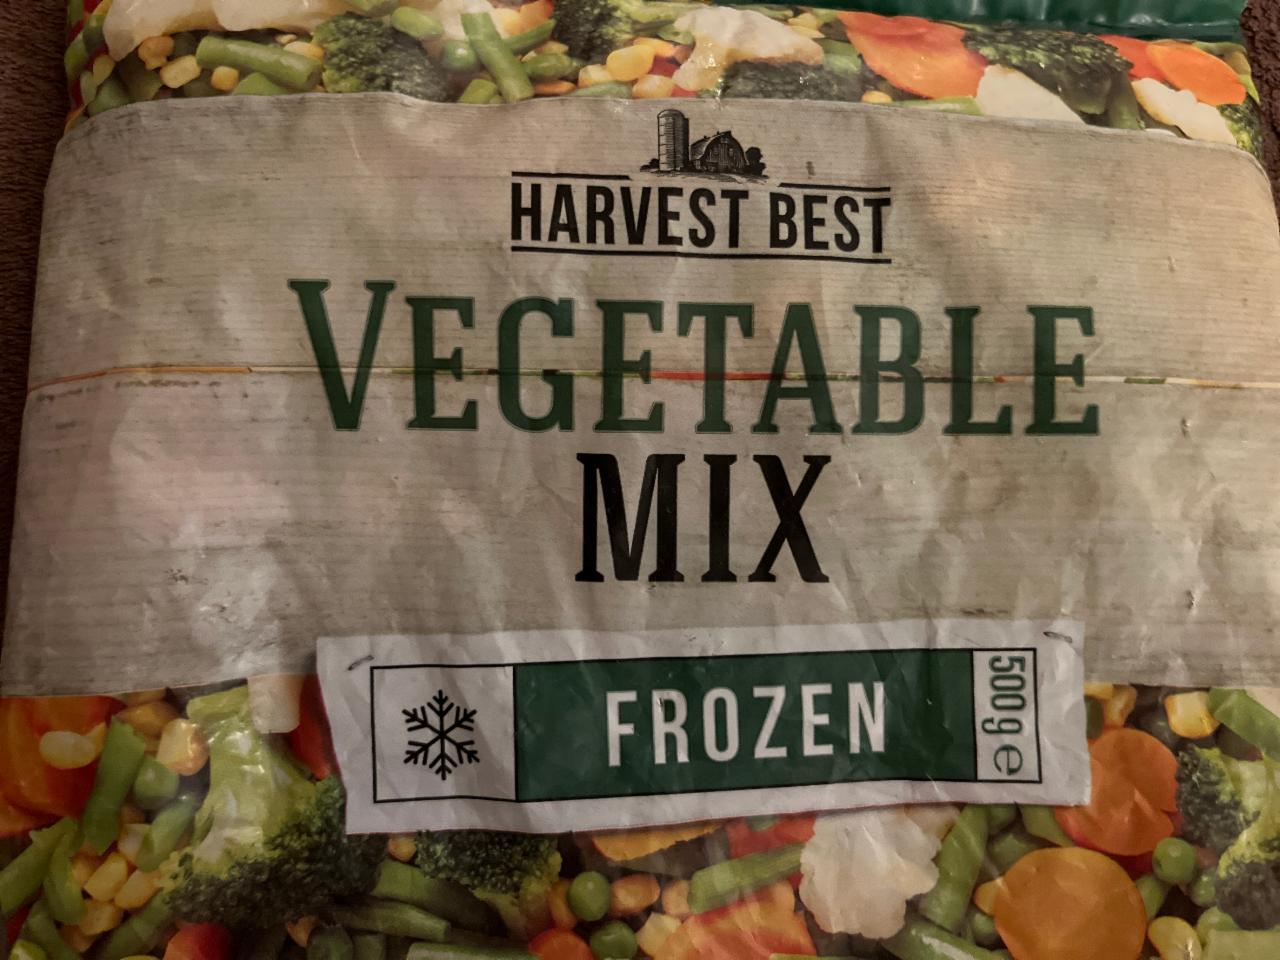 Zdjęcia - Vegetable mix frozen Harvest Best